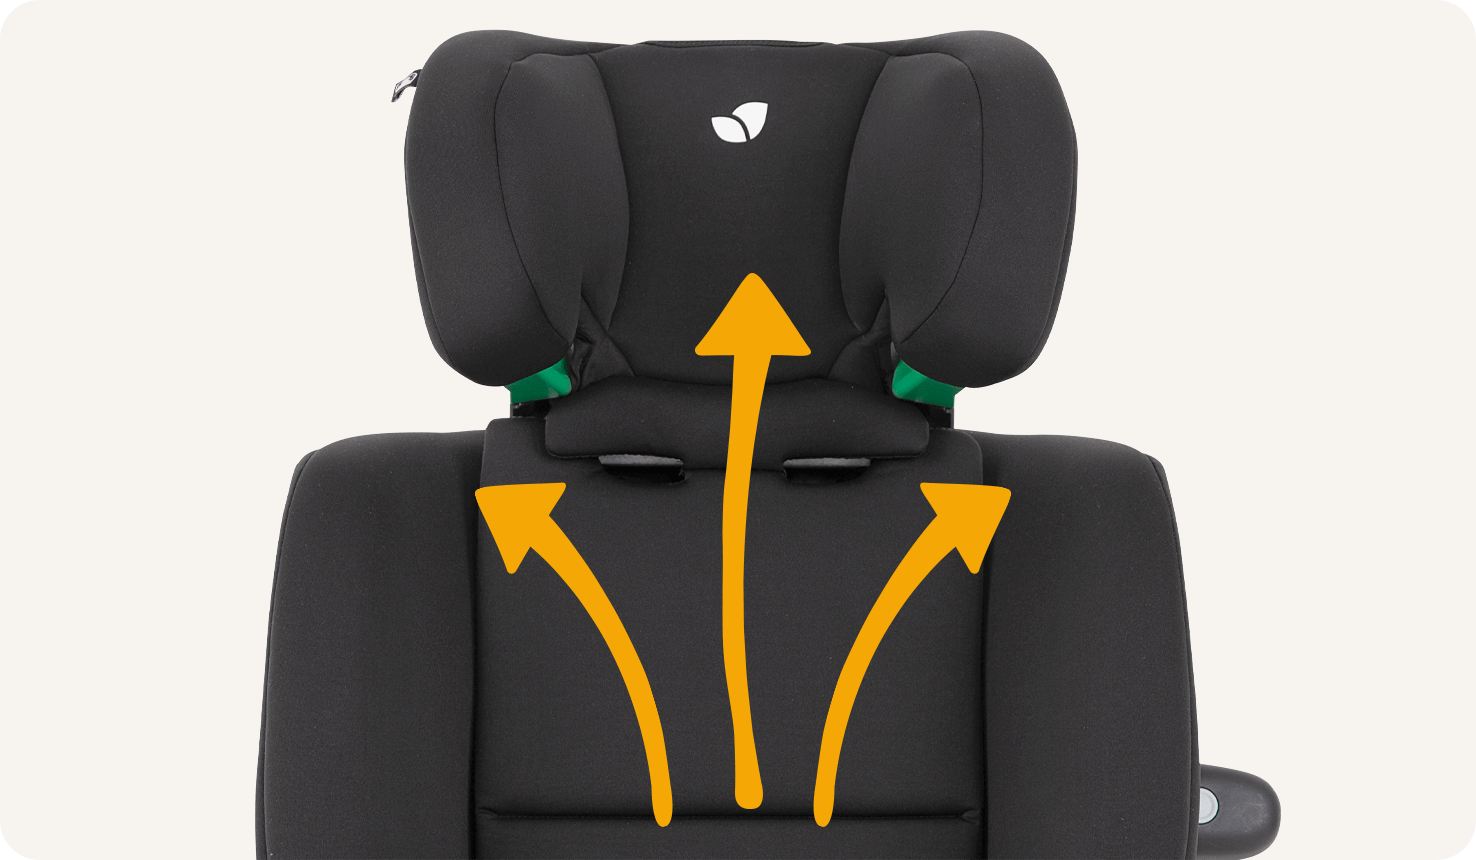 Detalle de la zona del reposacabezas de una silla de coche Joie Every Stage R129 negra, con tres flechas naranjas indicando el crecimiento hacia arriba y hacia fuera.